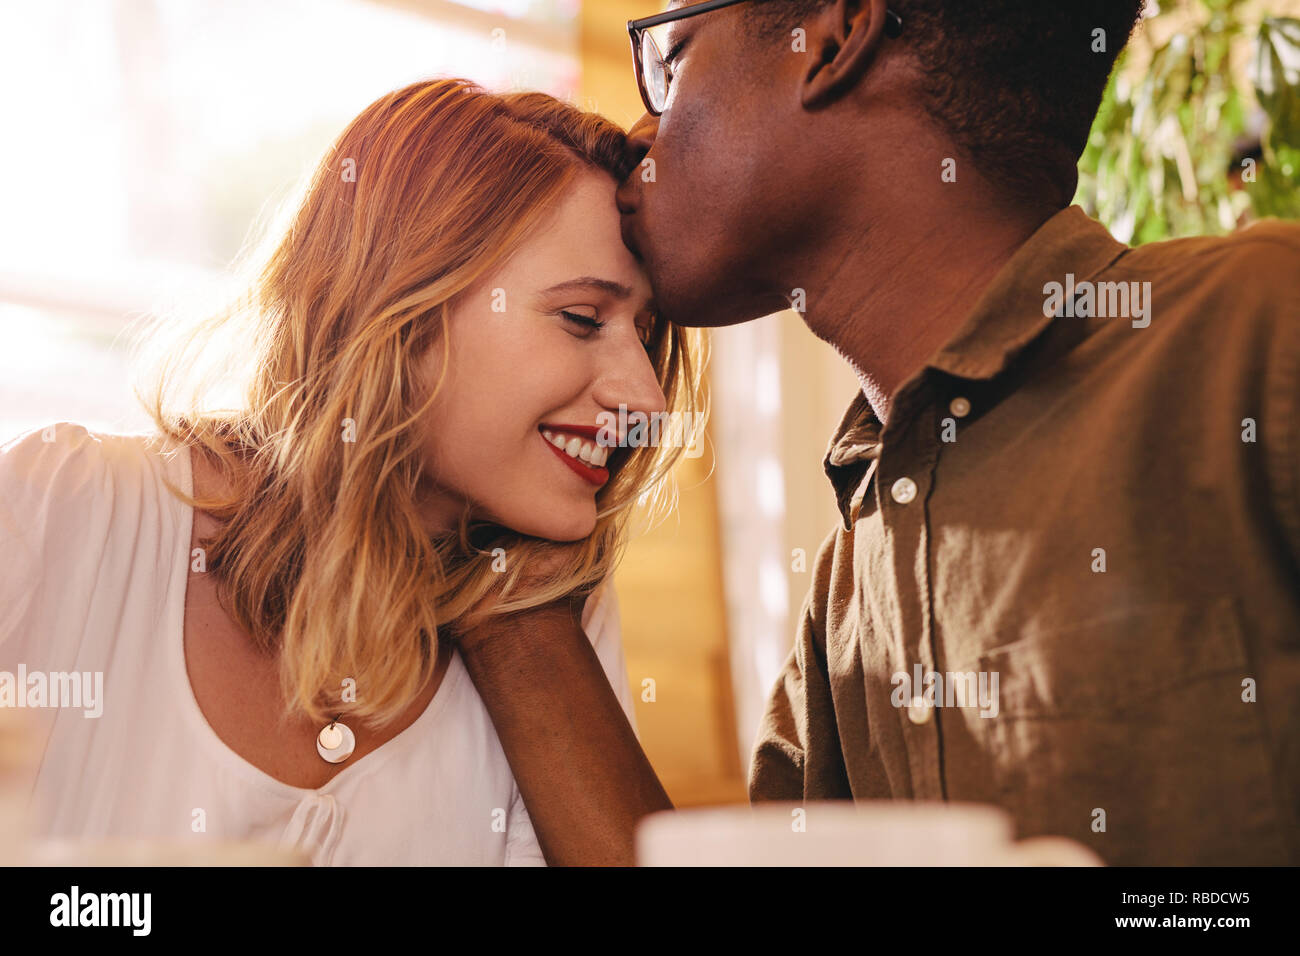 L'uomo africano baciare la fronte della sua fidanzata. Amare interracial matura in data presso la caffetteria. Foto Stock